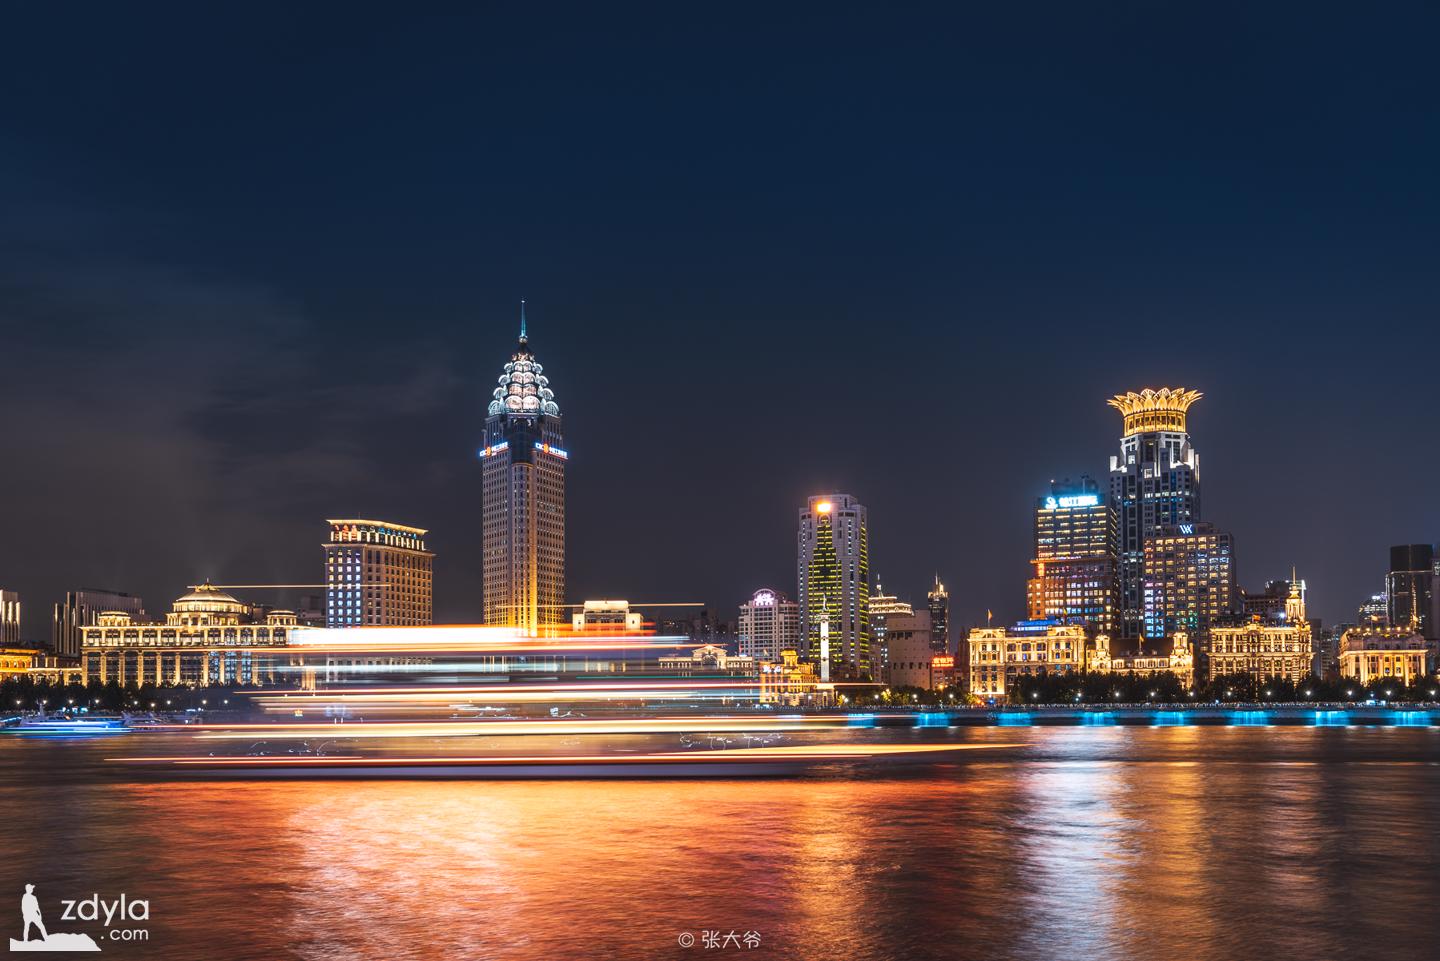 The Shanghai Bund Neon